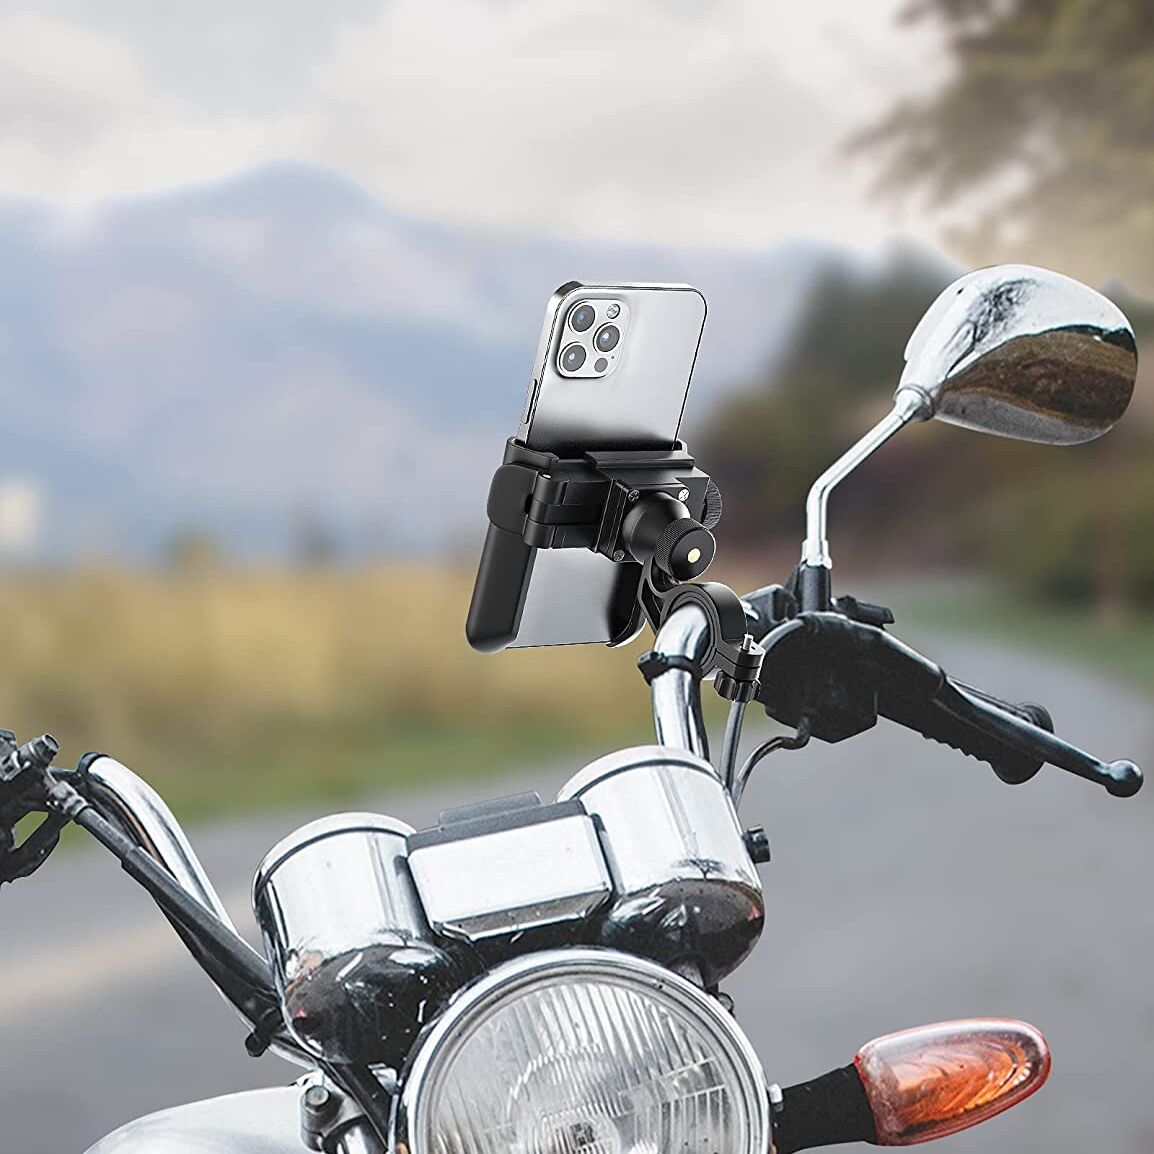 Equipa tu moto con este soporte para móvil tirado de precio en